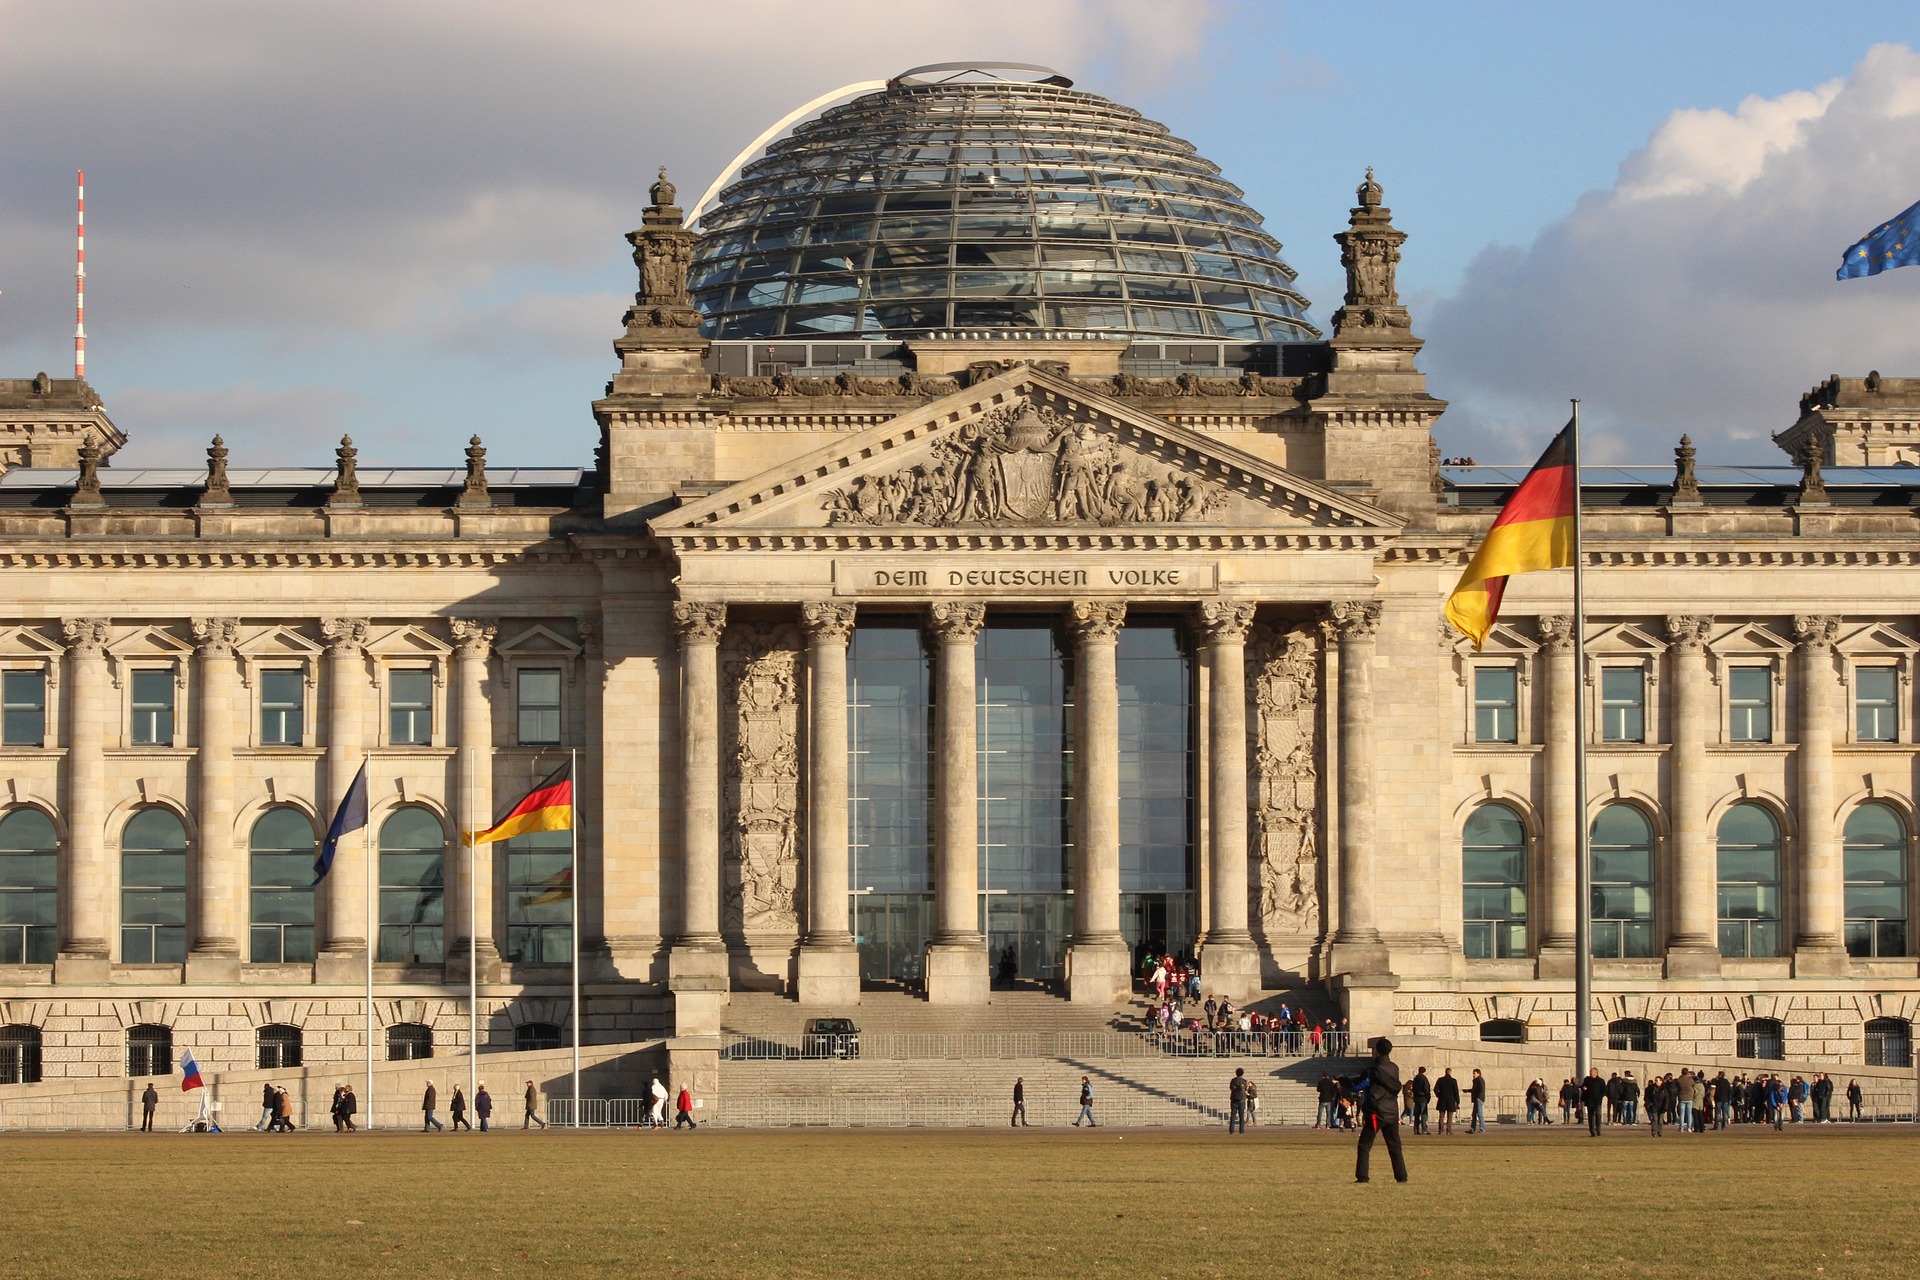 Praktikum im Bundestag oder: Wieso bleibt der Plenarsaal meistens leer? 